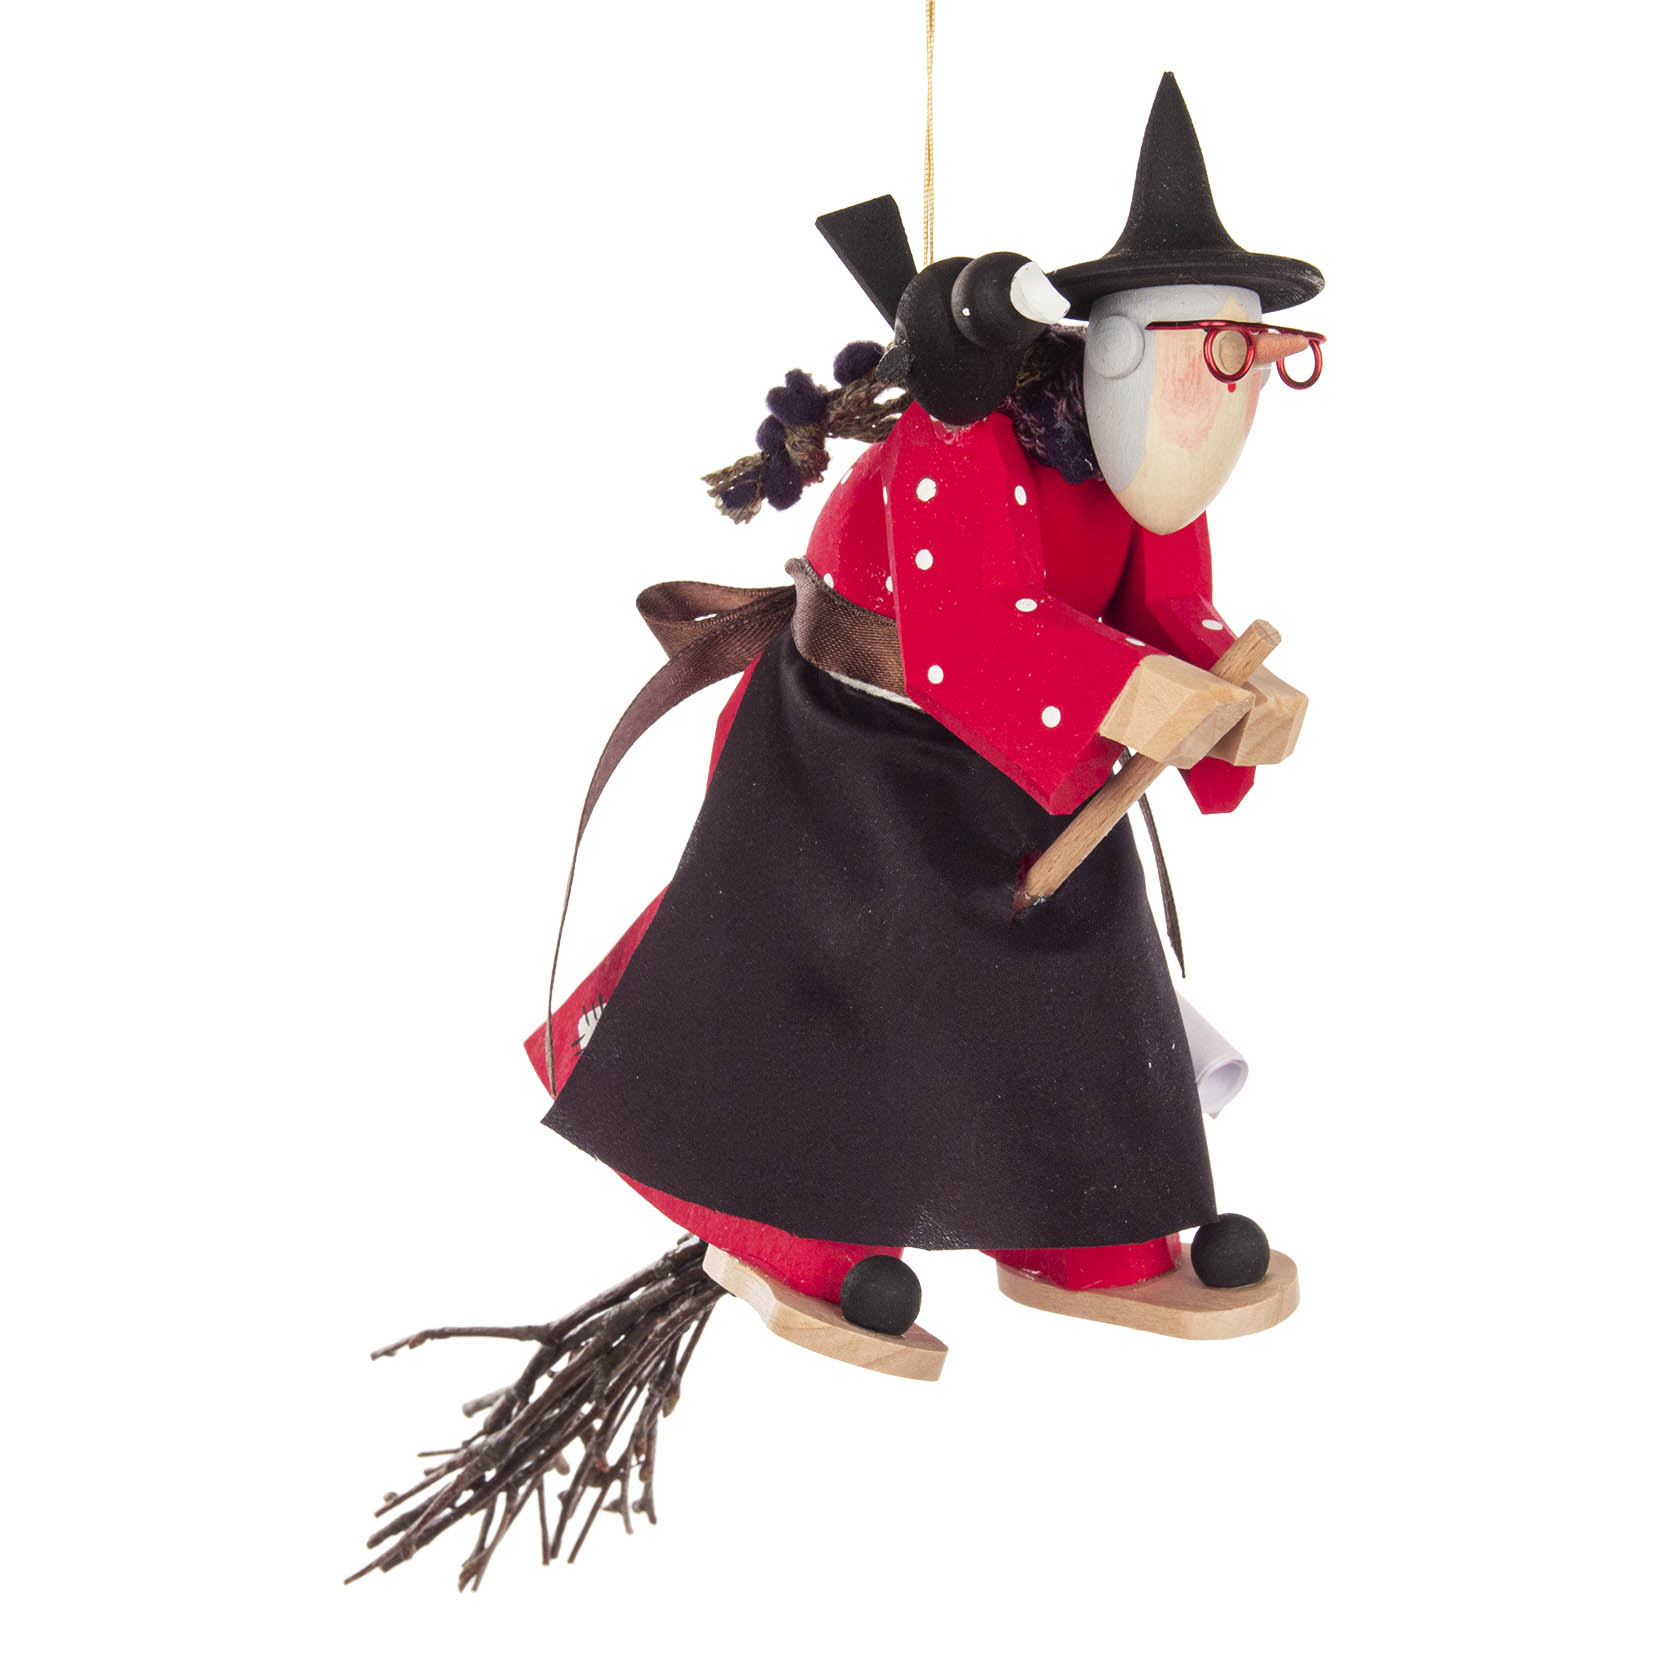 Hexe mit Rabe auf Besen, geschnitzt, zum Hängen im Dregeno Online Shop günstig kaufen